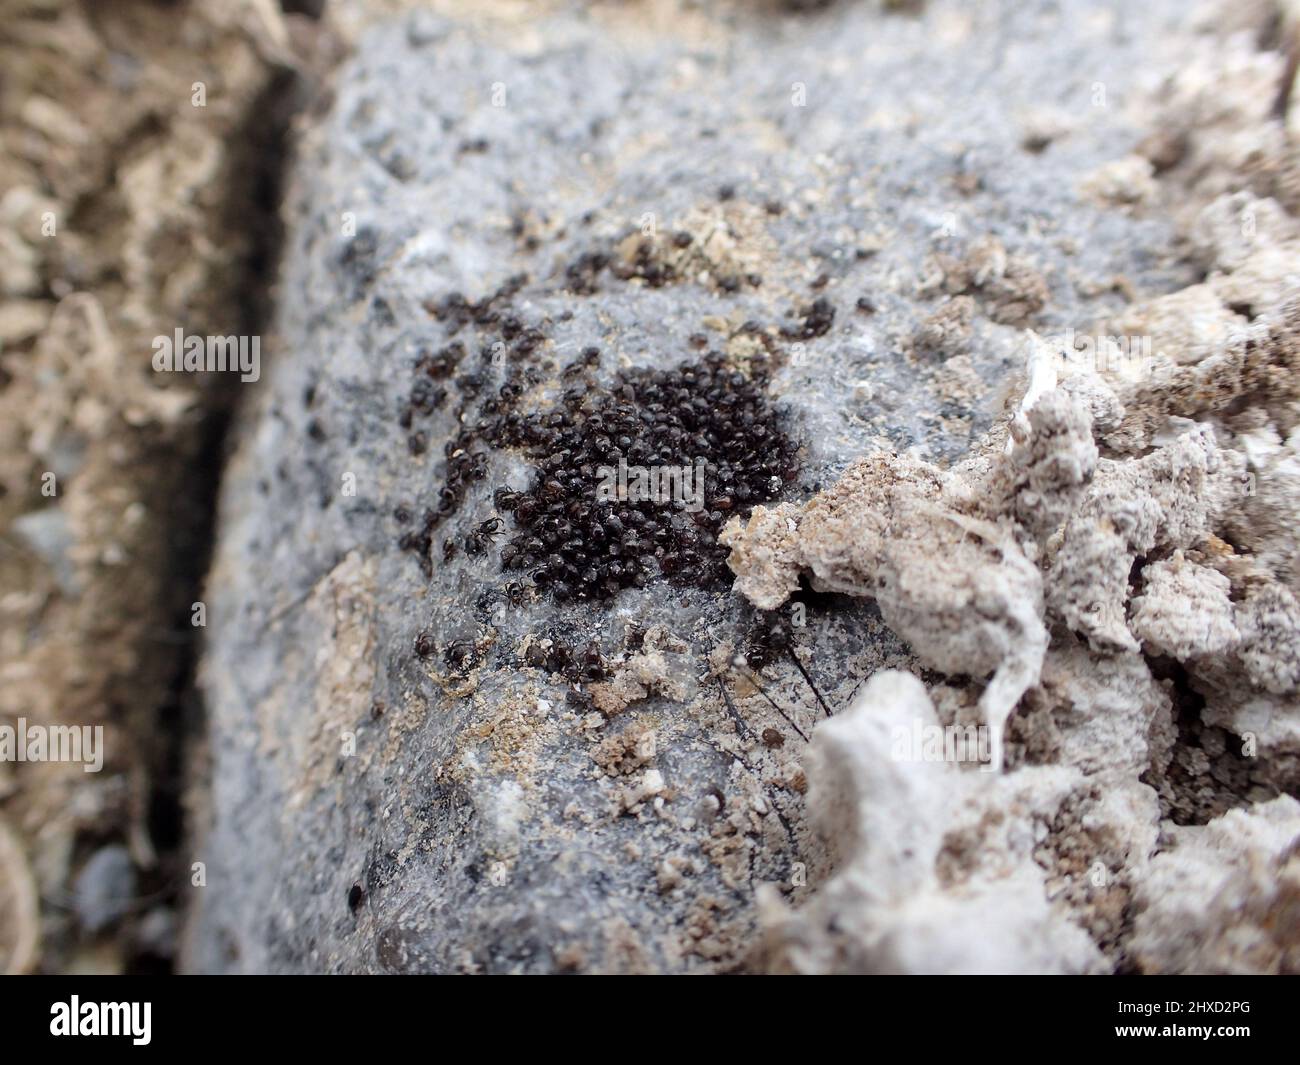 Groupe d'acariens Alaskozetes insecte invertébré sur la roche de l'île Cormorant, Arthur Harbour, Antarctique Banque D'Images